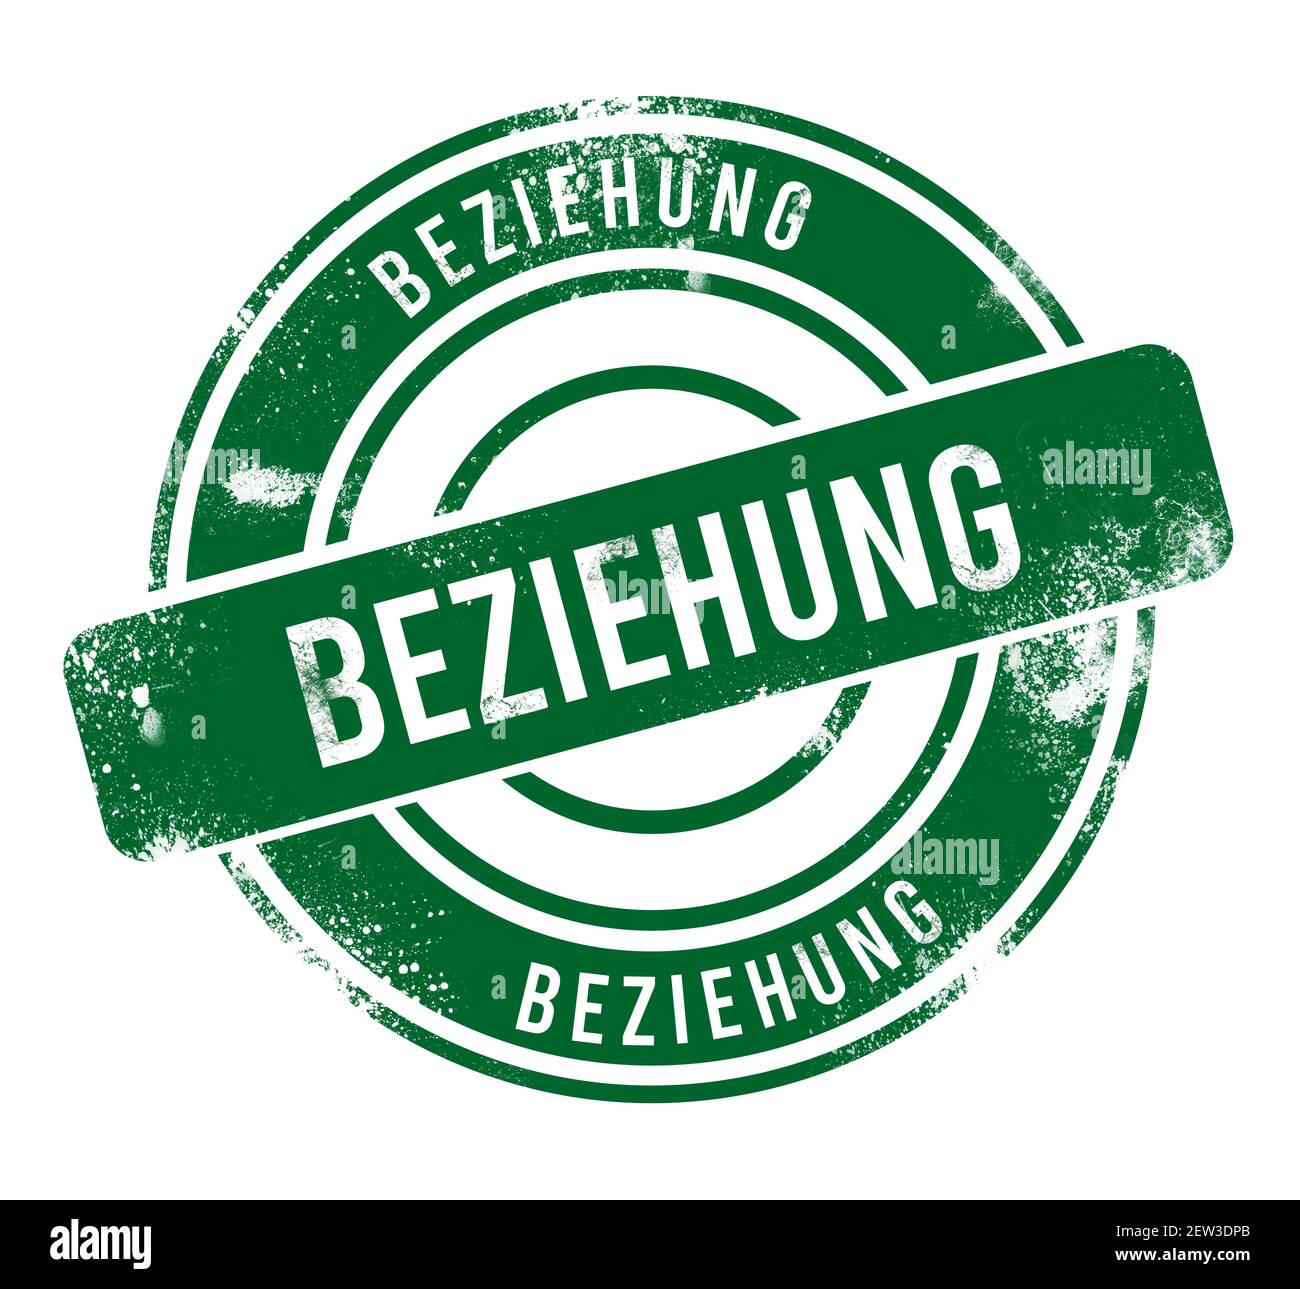 beziehung - green round grunge button, stamp Stock Photo